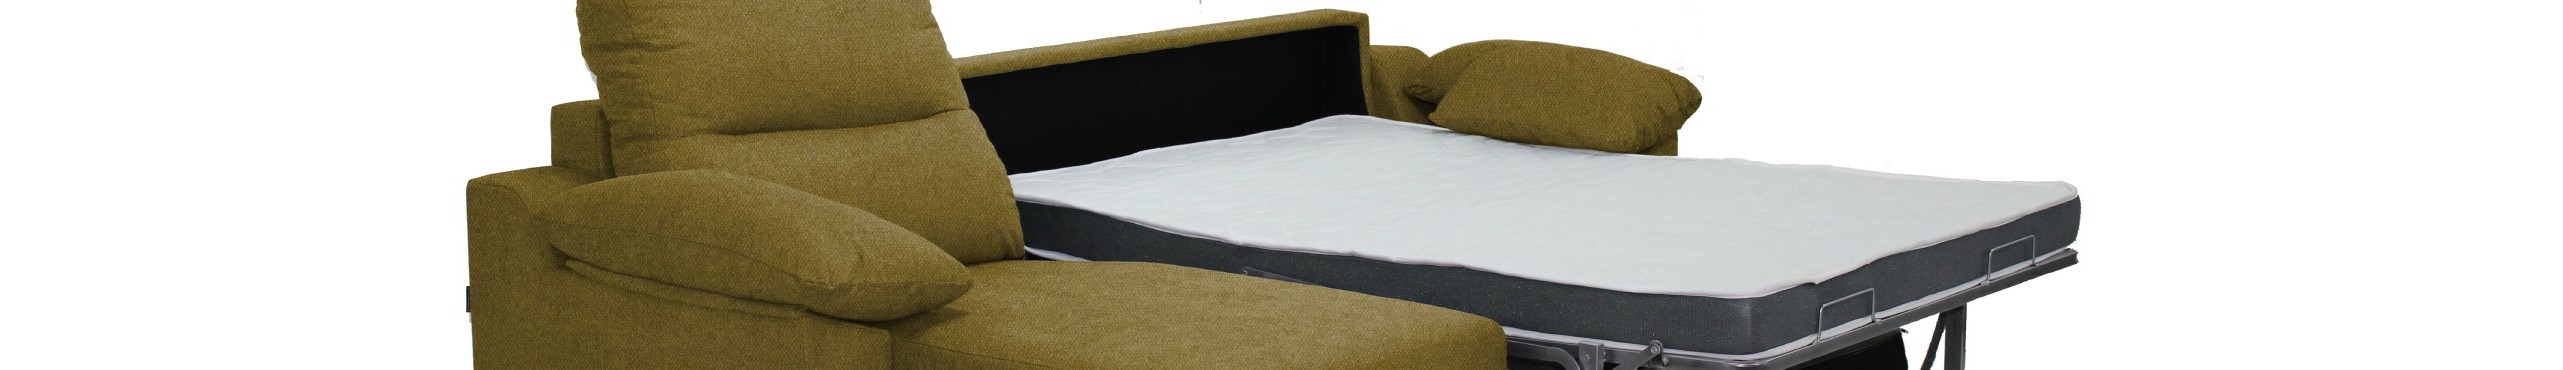 MerkaHome - Sofá cama Copo. Apertura tipo clic clac, tapizado gris y patas  de madera. Ideal para el estudio o la habitación de juegos. Con ENVÍO  GRATIS 225 €